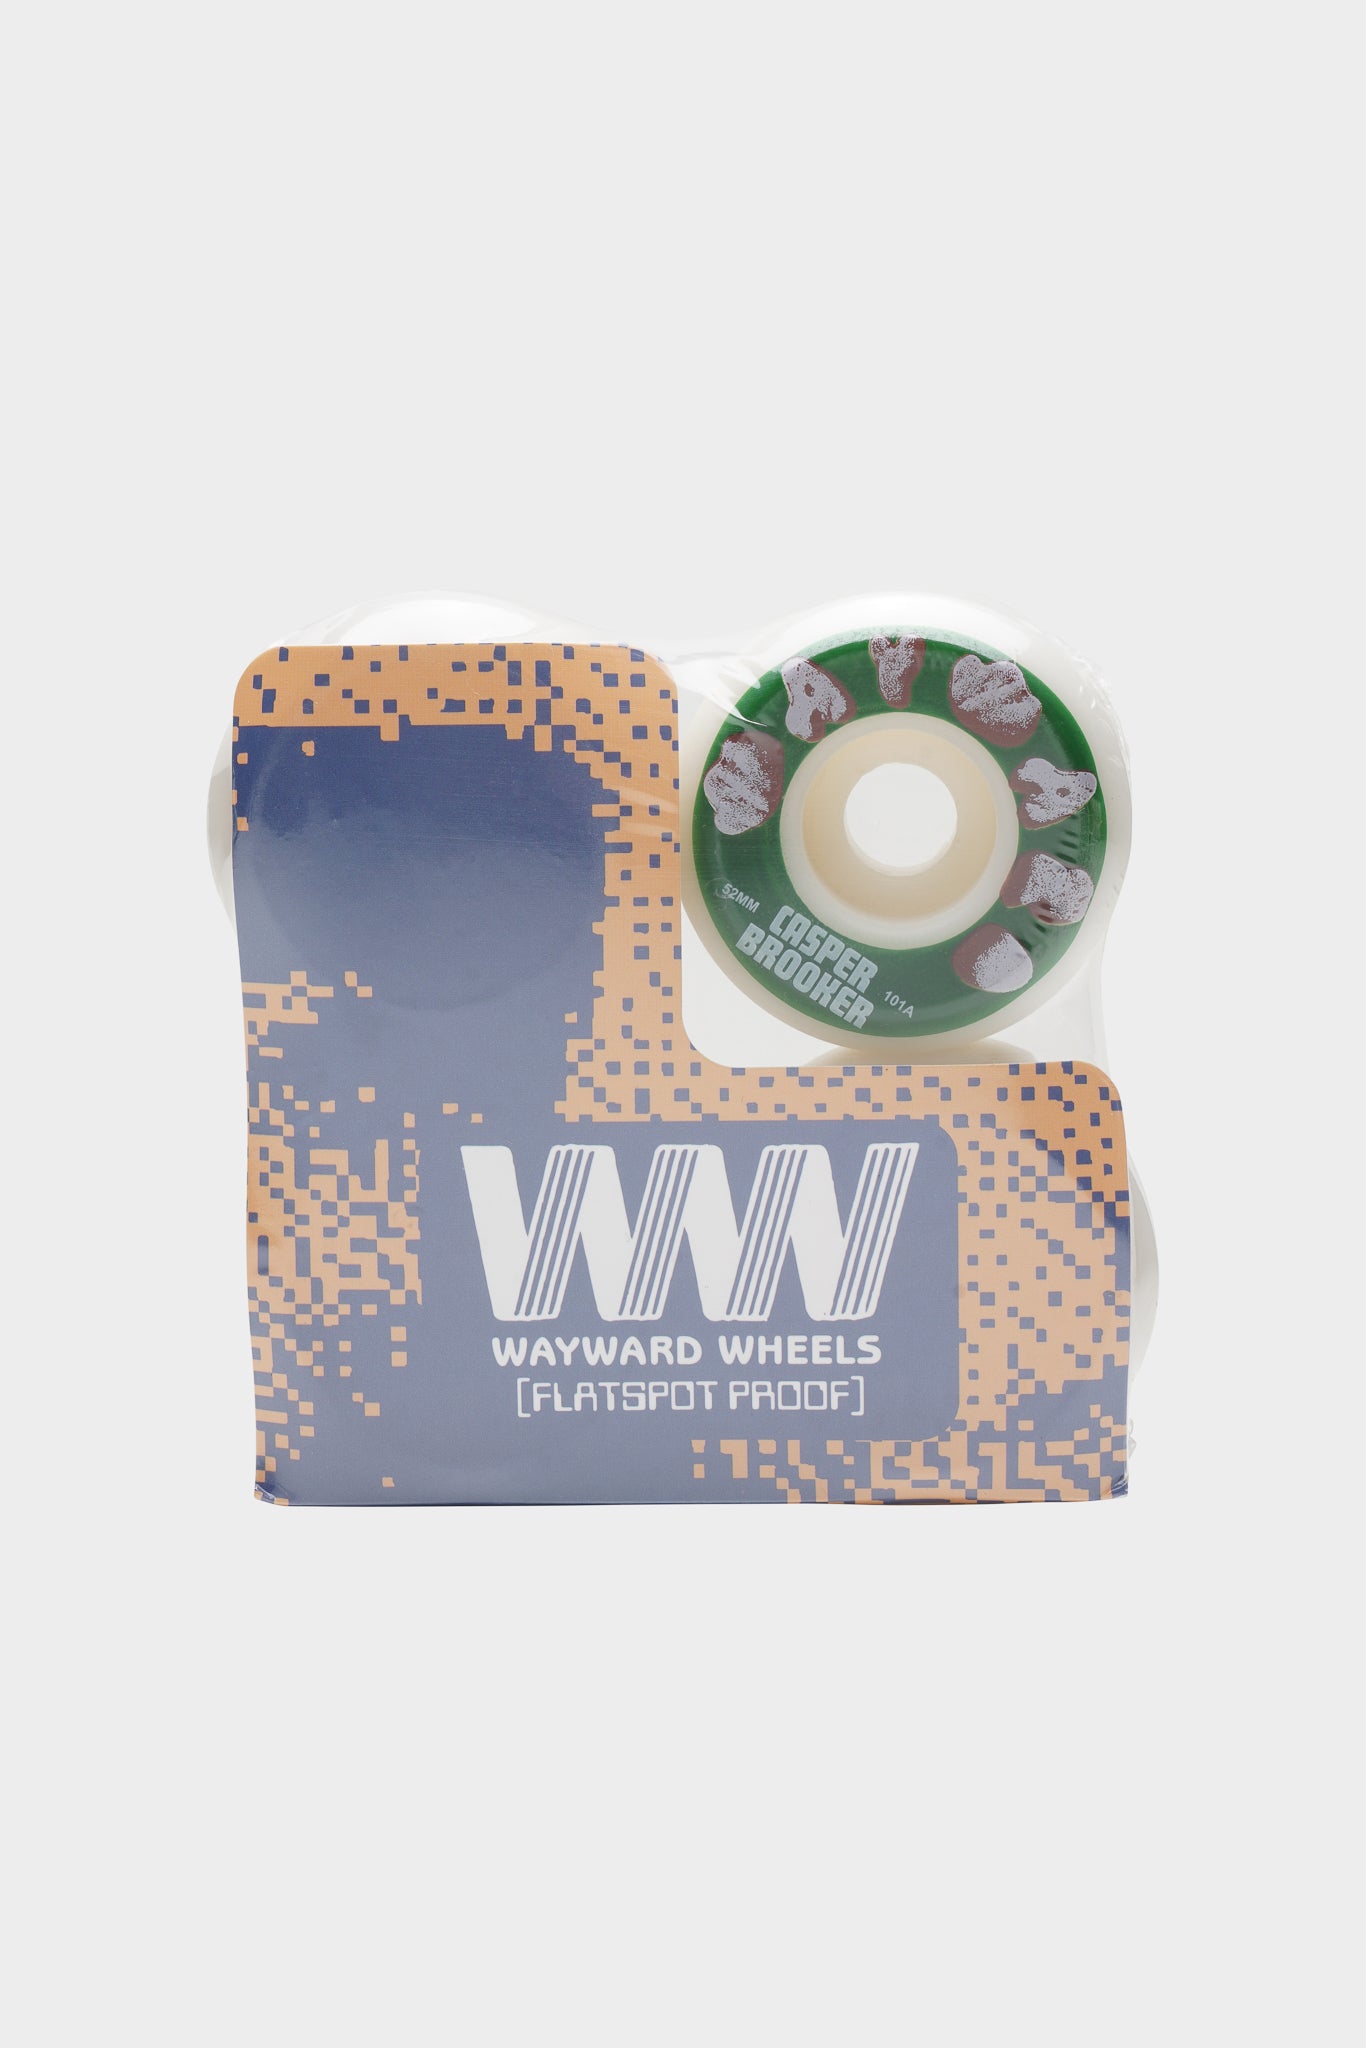 Selectshop FRAME - WAYWARD WHEELS Funnel Pro Wheel- 'Casper Brooker' 52mm Skate Dubai